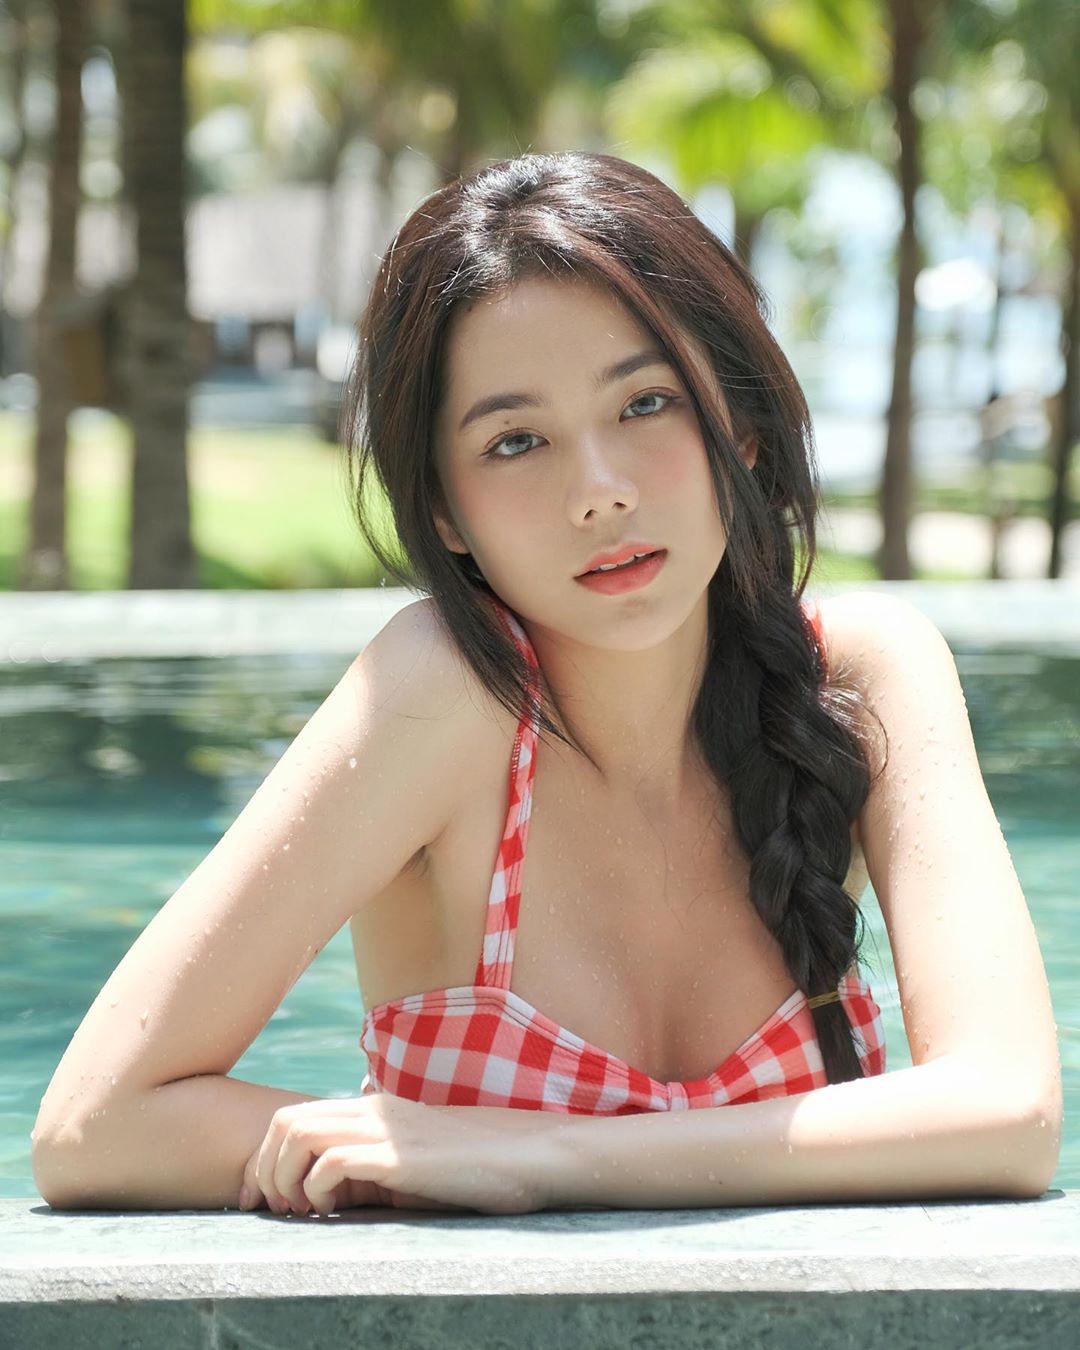 Lên đầu trang báo nước ngoài vì những bộ ảnh nội y gợi cảm, hot girl Việt sở hữu số đo ba vòng 90-60-89 khiến người hâm mộ không khỏi trầm trồ trước vẻ đẹp của cô - Ảnh 9.